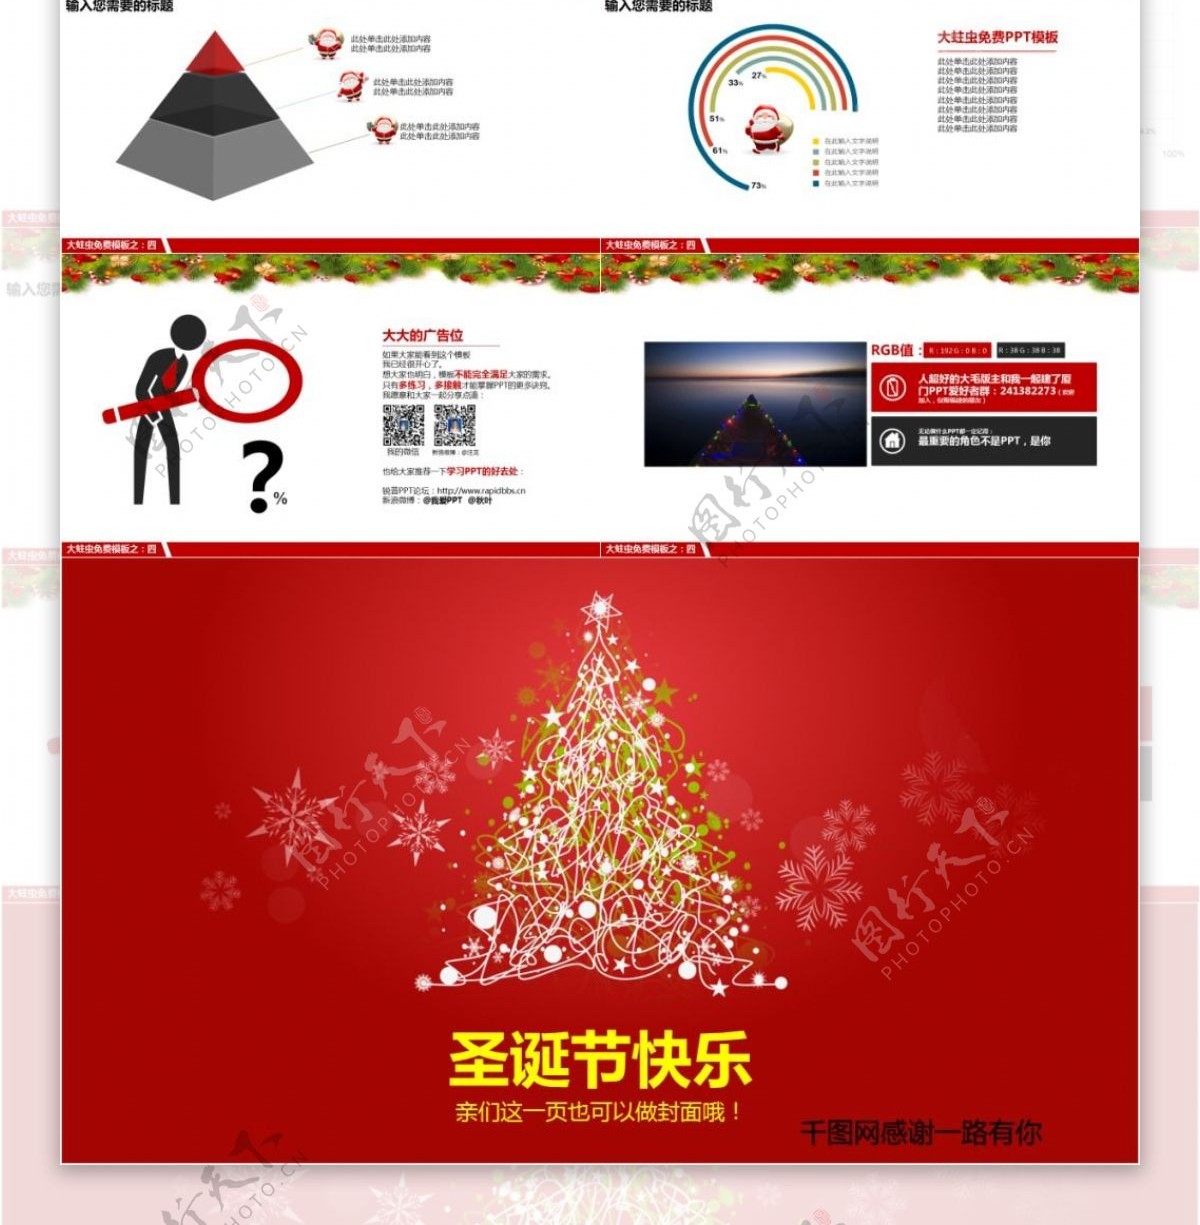 华丽喜庆圣诞节节日庆典PPT模板免费下载